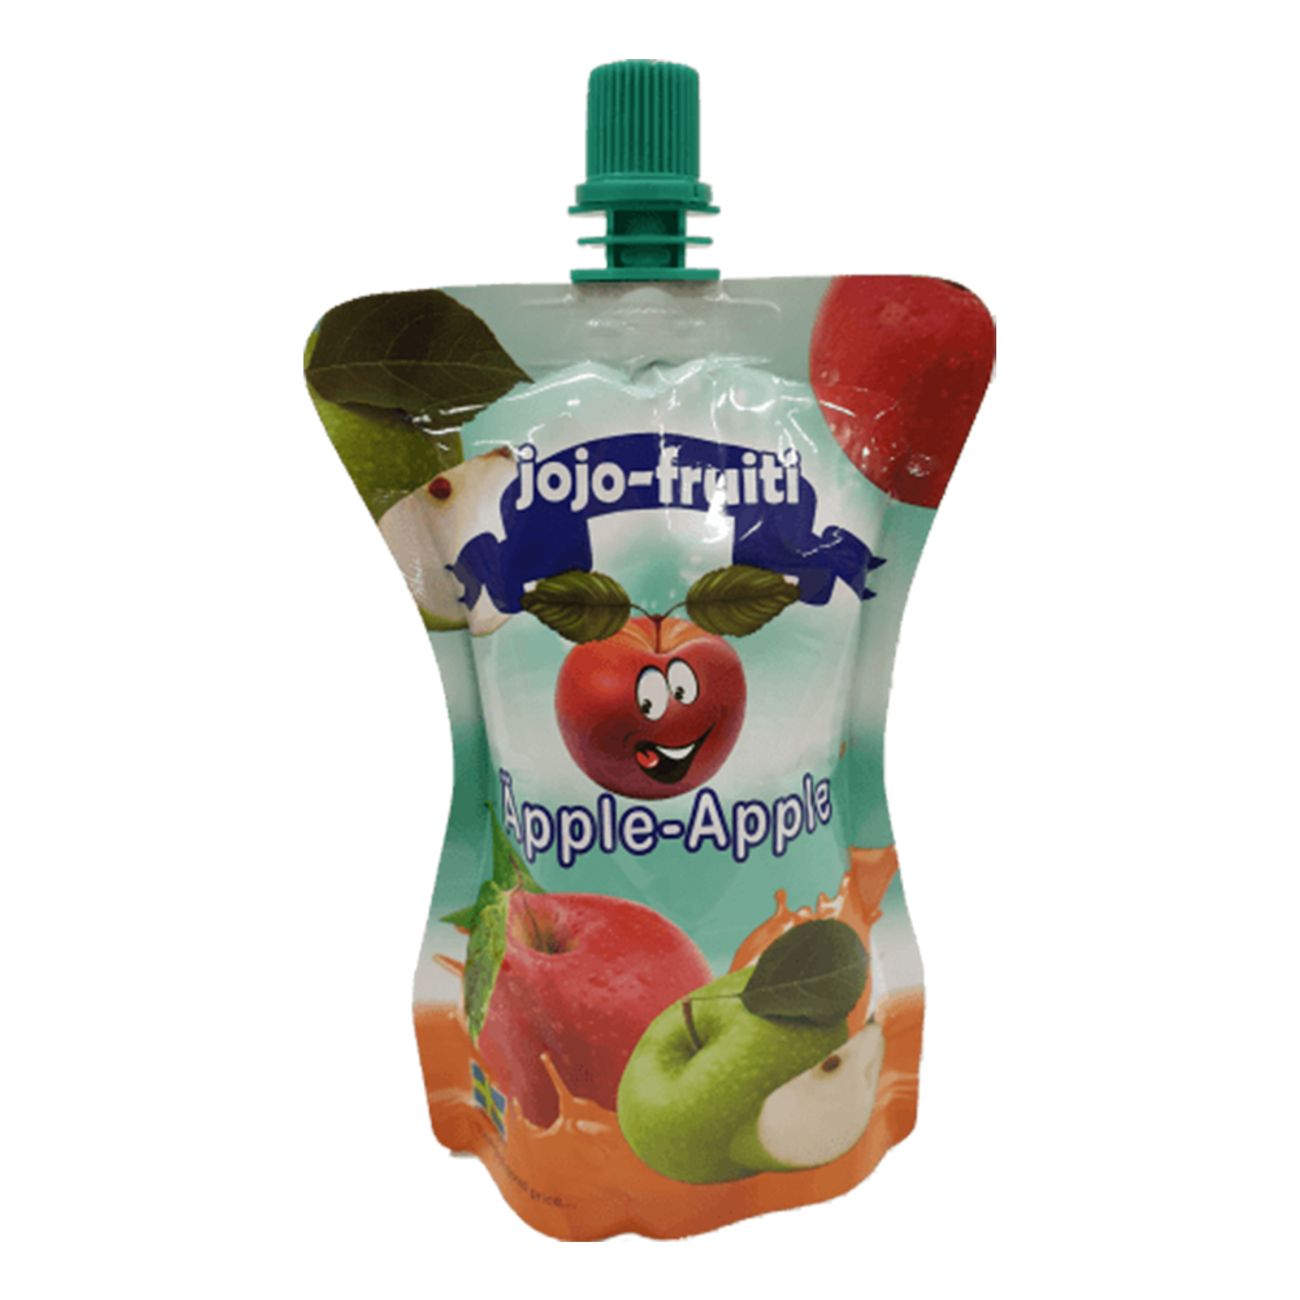 jojo-fruity-apple-212ml-92758-1